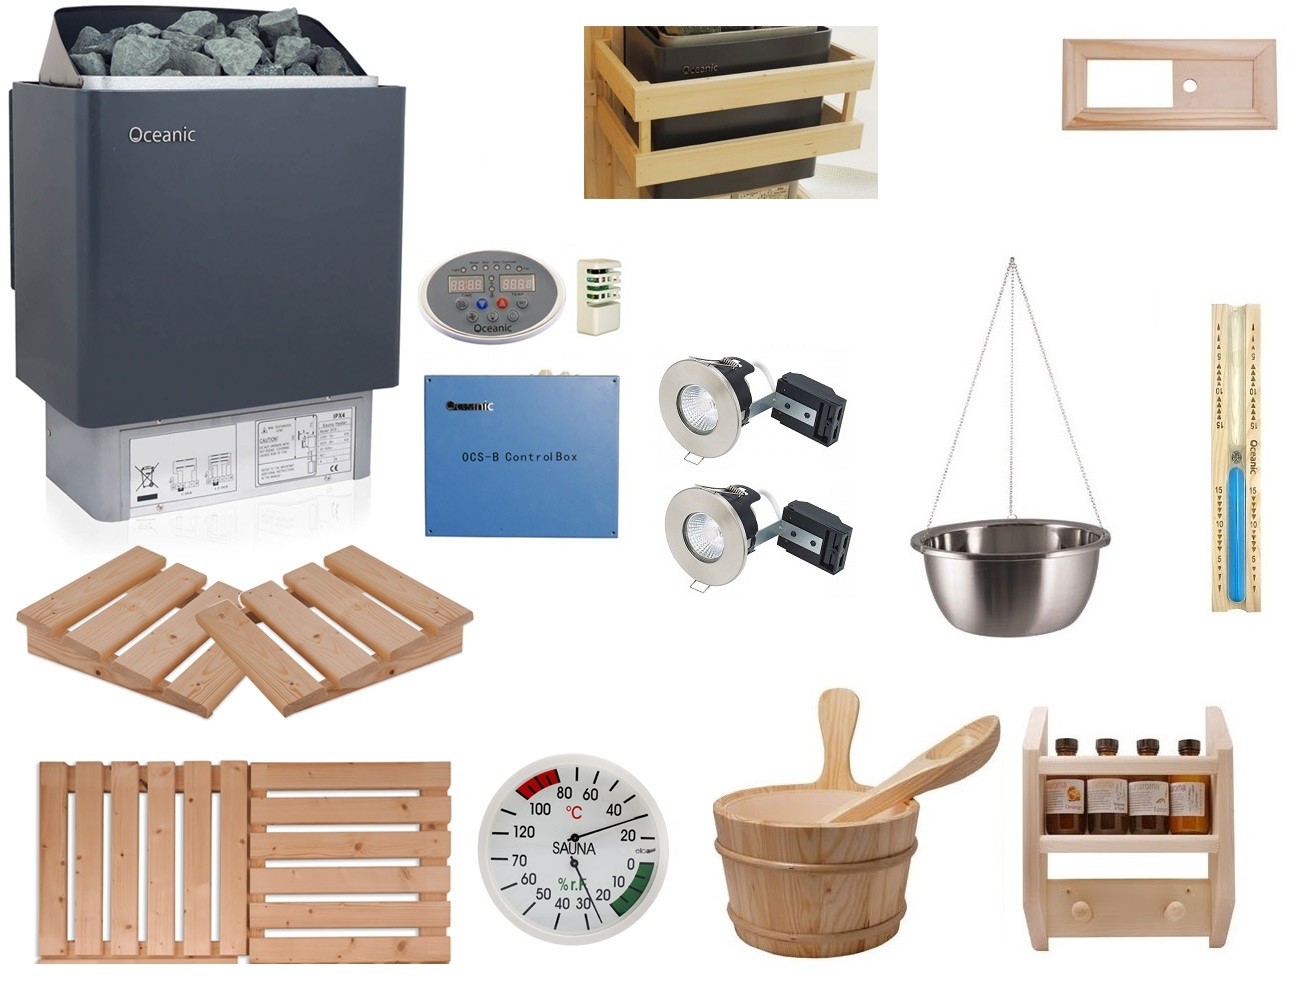 Kit accessori per sauna con stufa Oceanic - Celebration